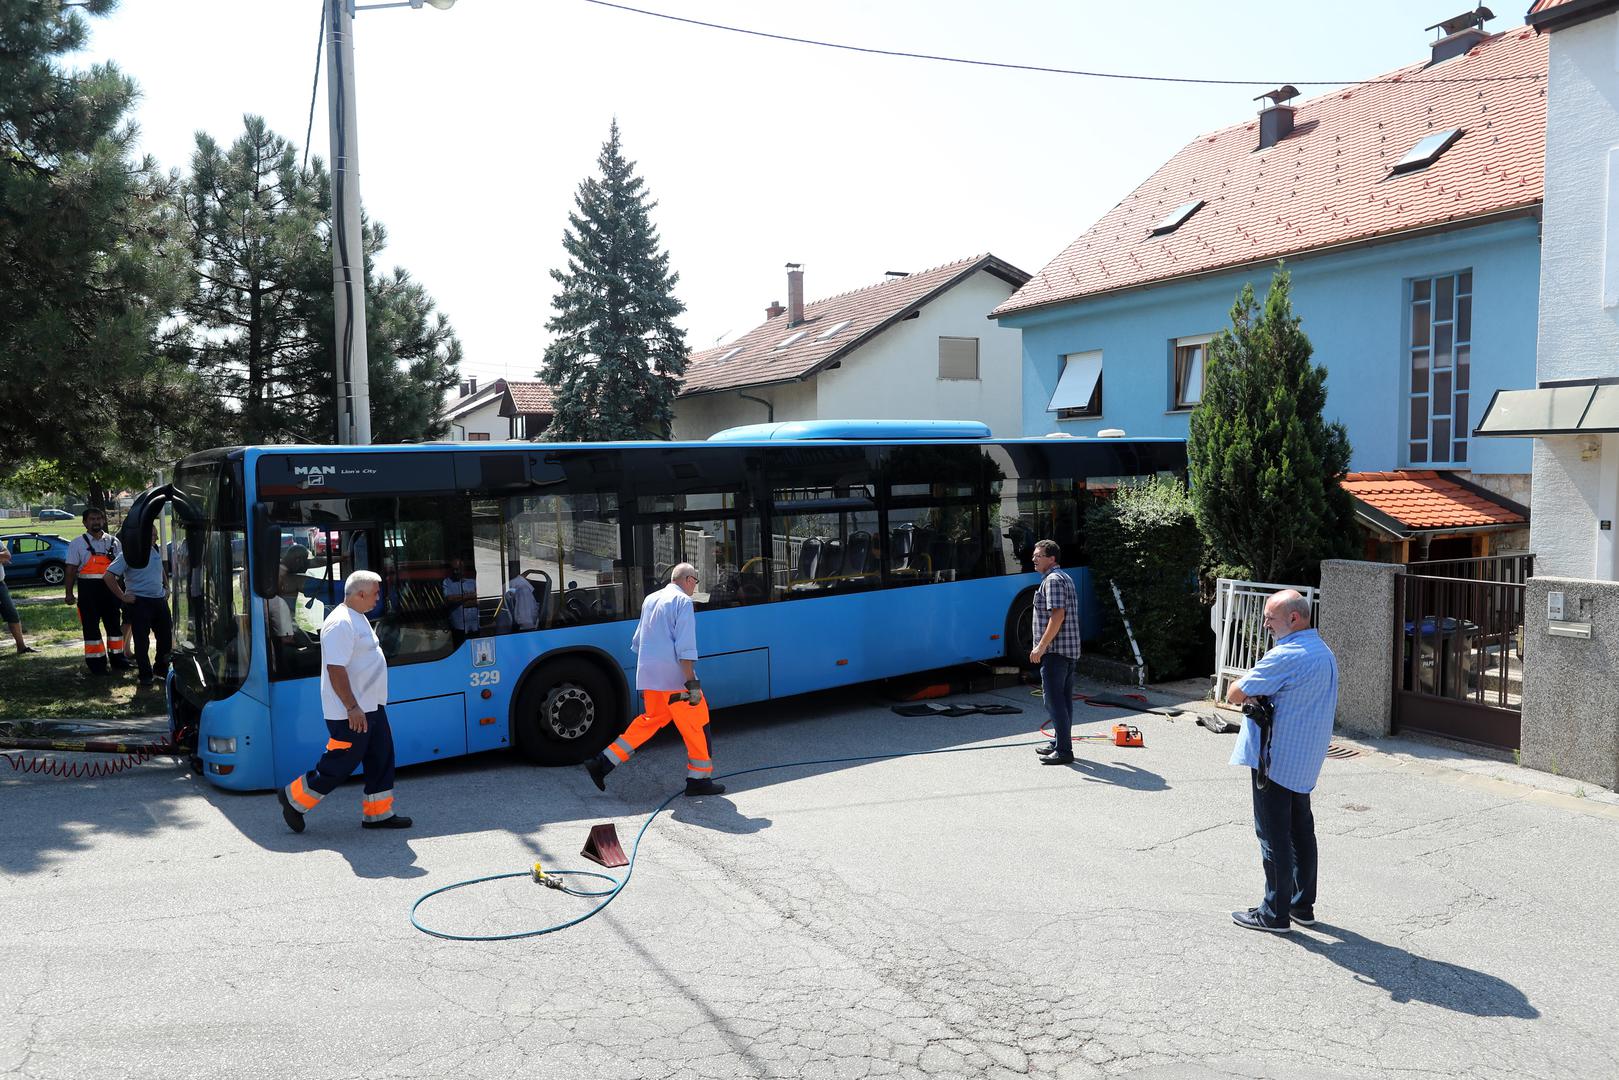 Nesreća se dogodila na križanju ulica Rebar i Kozjak.